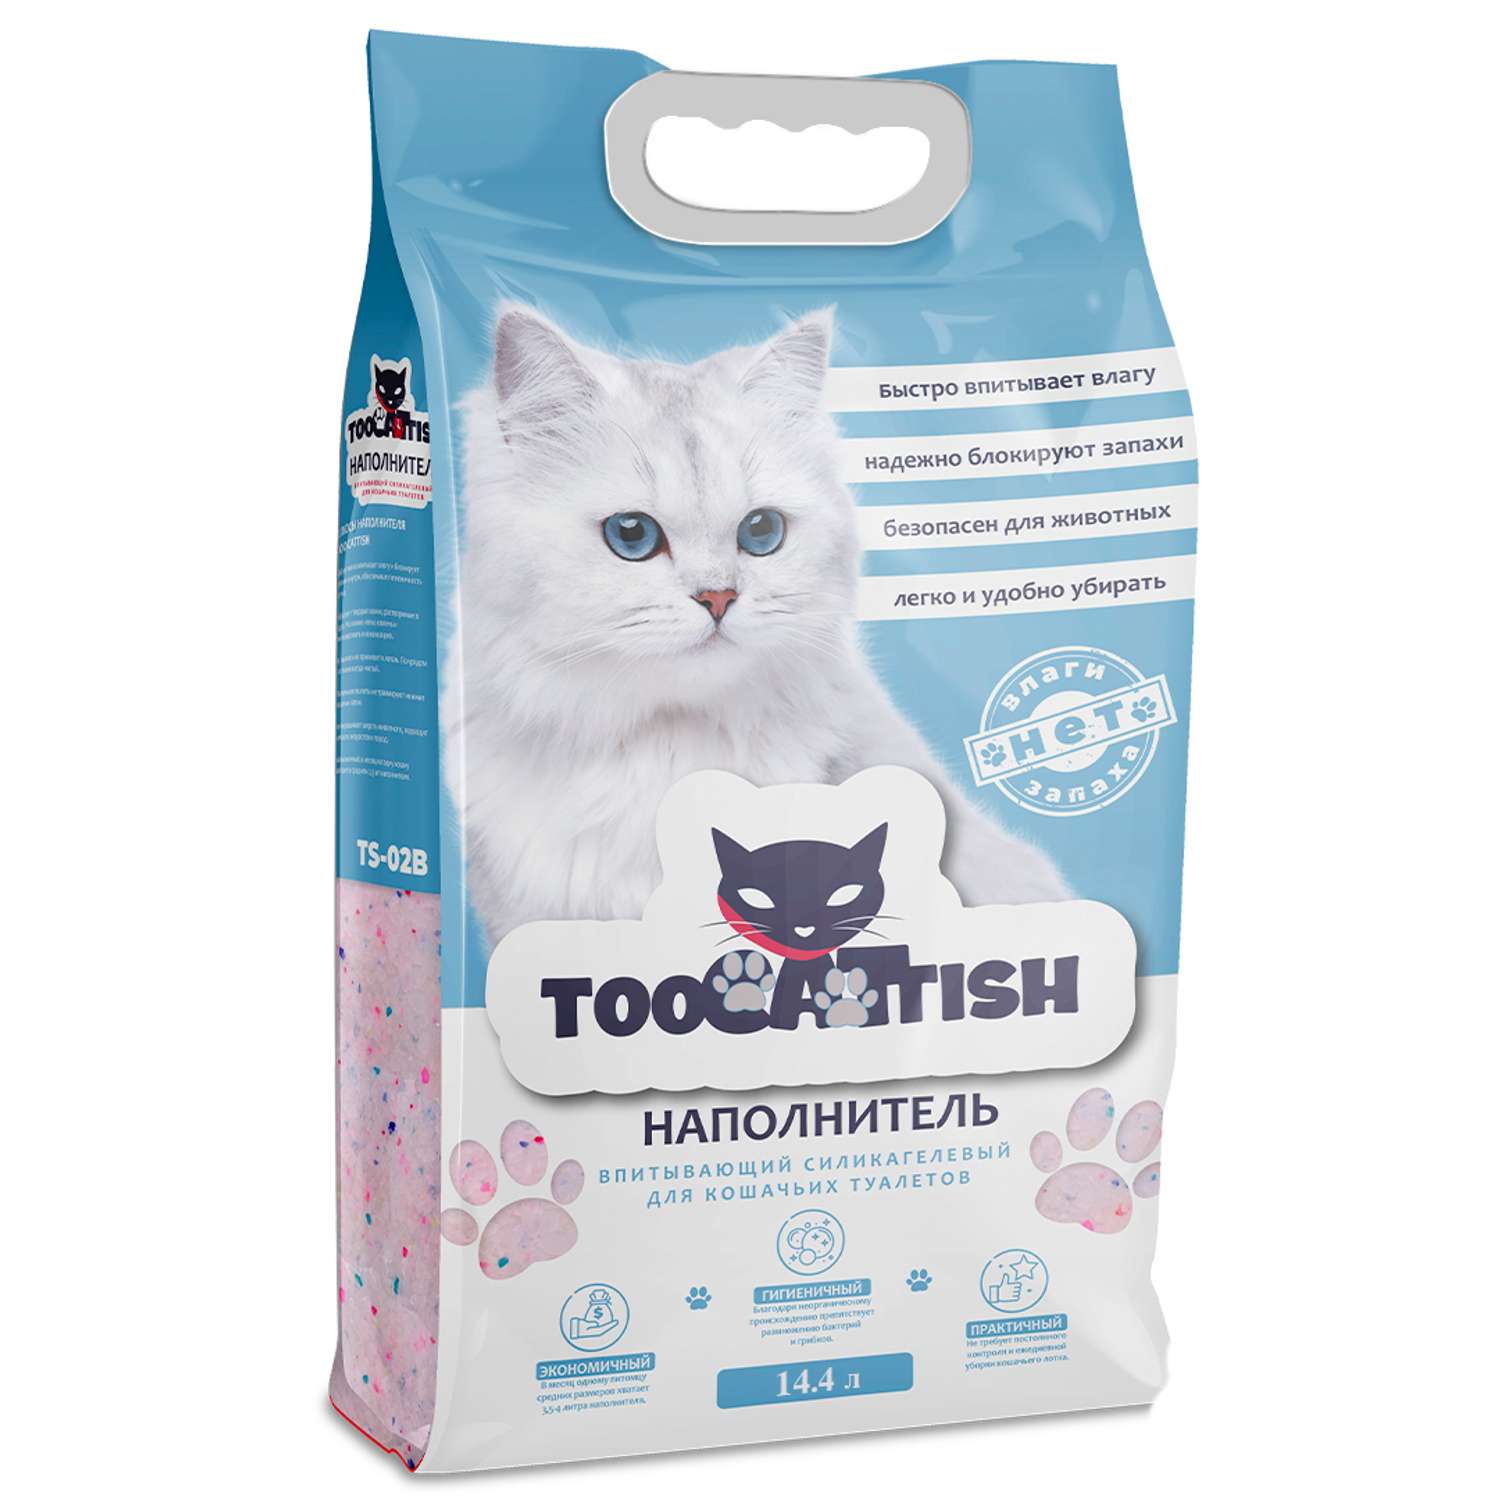 Наполнитель для кошек TooCattish Blue 14.4 л - фото 1